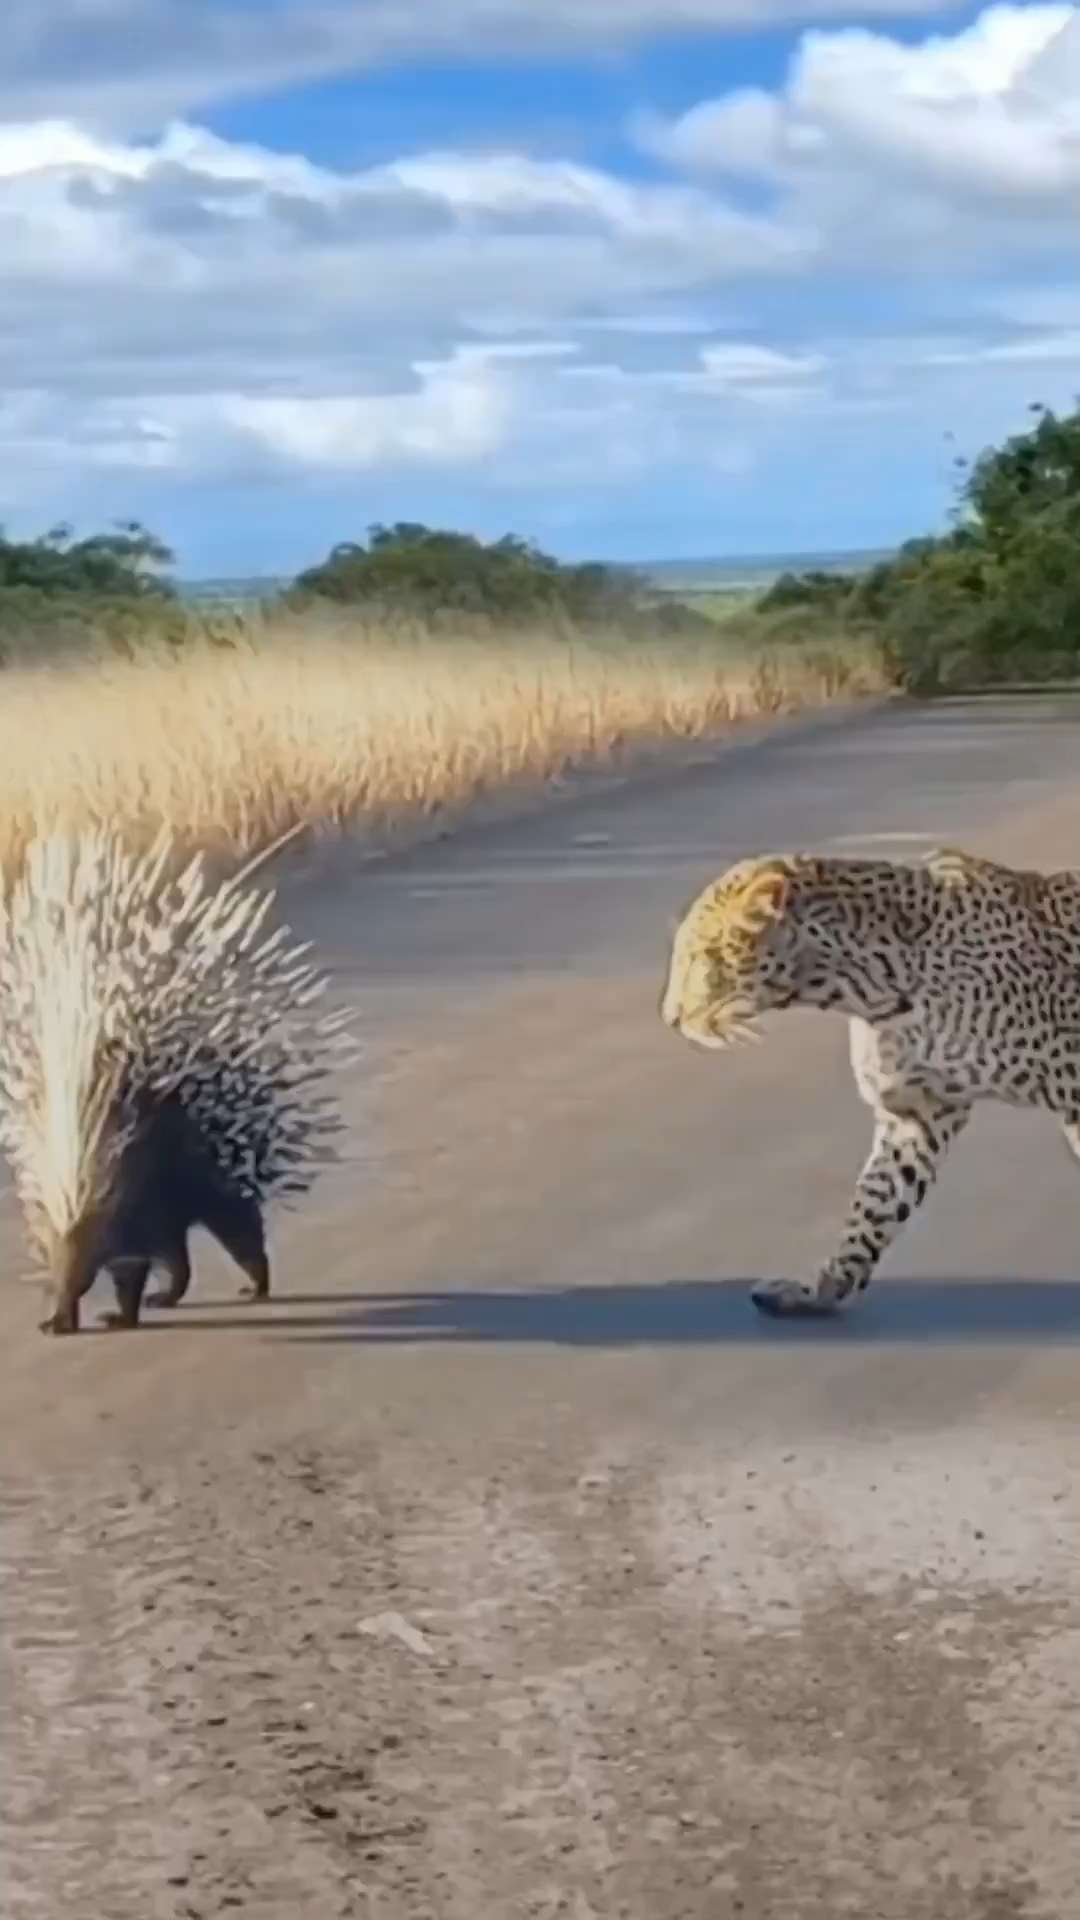 Spiny leopard